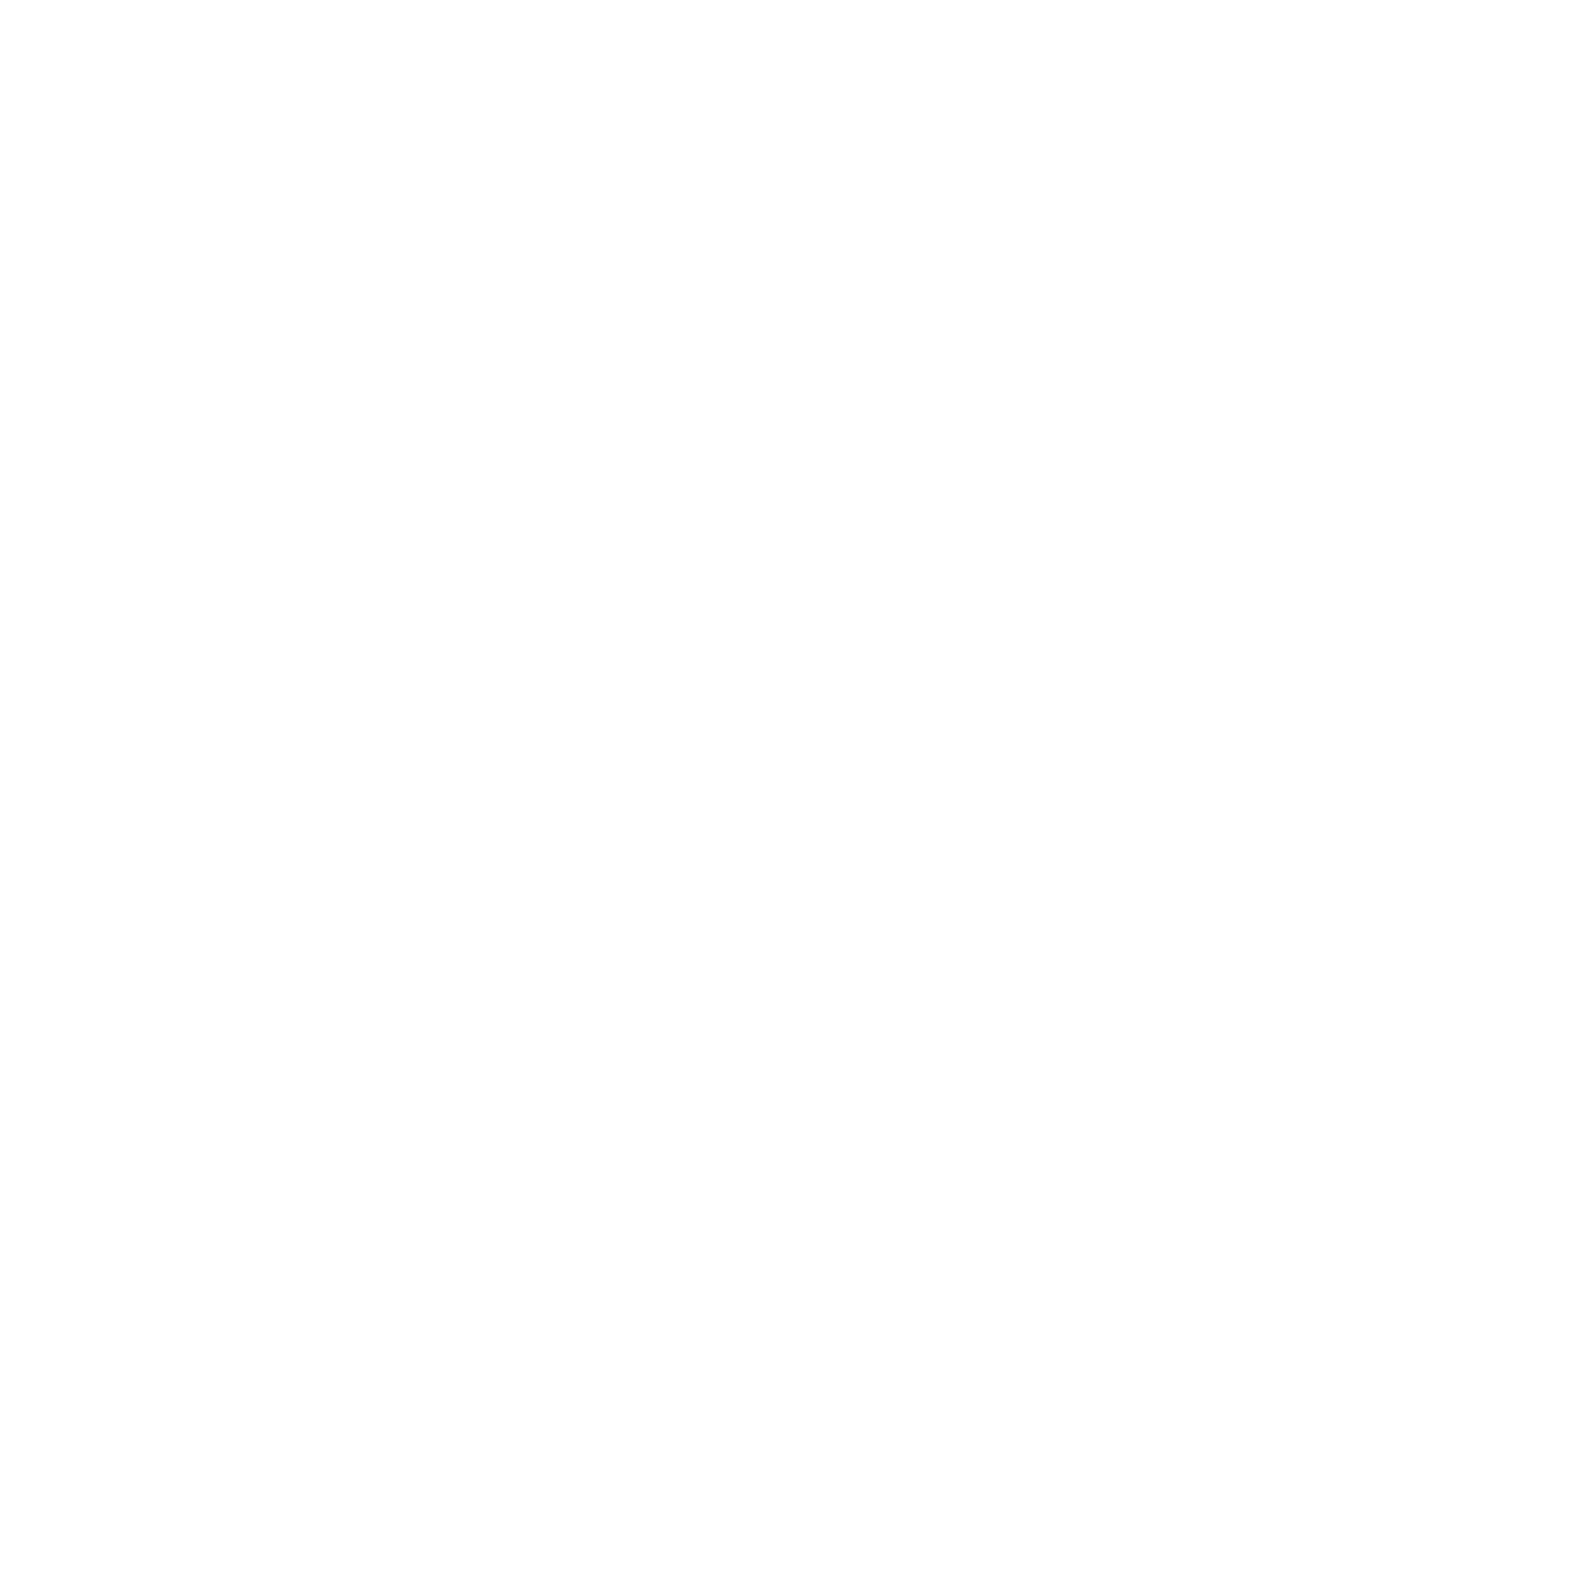 TD Synnex logo for dark backgrounds (transparent PNG)